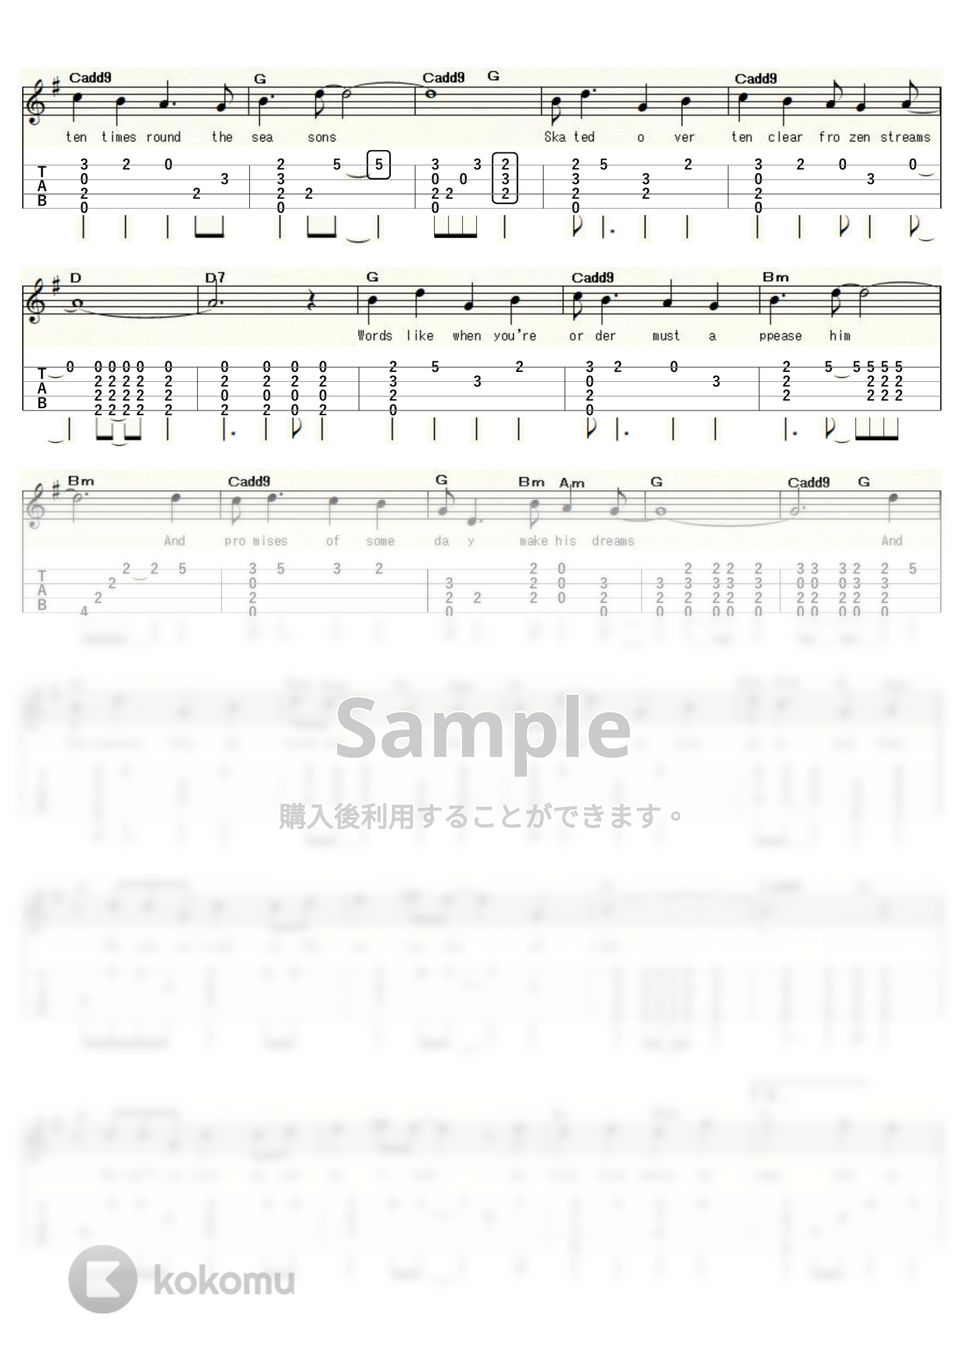 ジョニ・ミッチェル/バフィー・セントメリー - サークルゲーム (ｳｸﾚﾚｿﾛ/Low-G/中級) by ukulelepapa